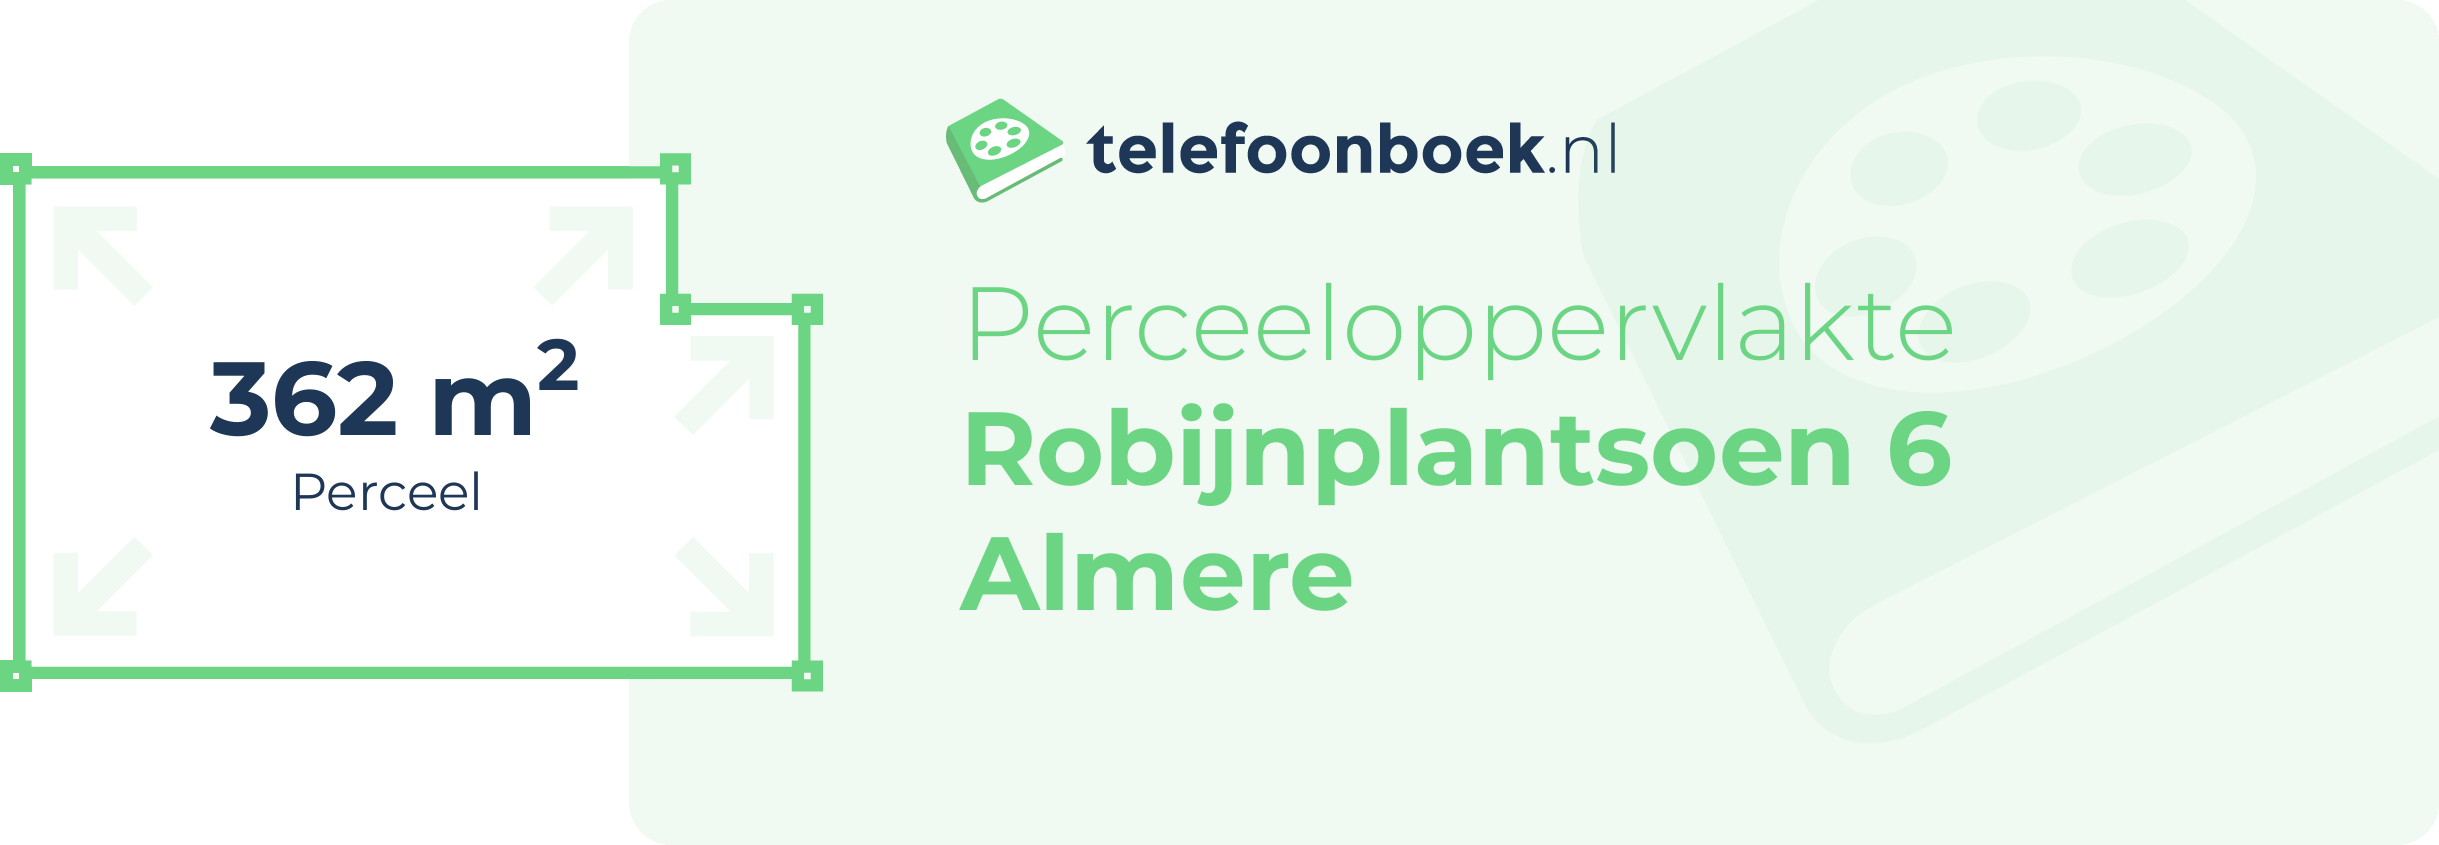 Perceeloppervlakte Robijnplantsoen 6 Almere